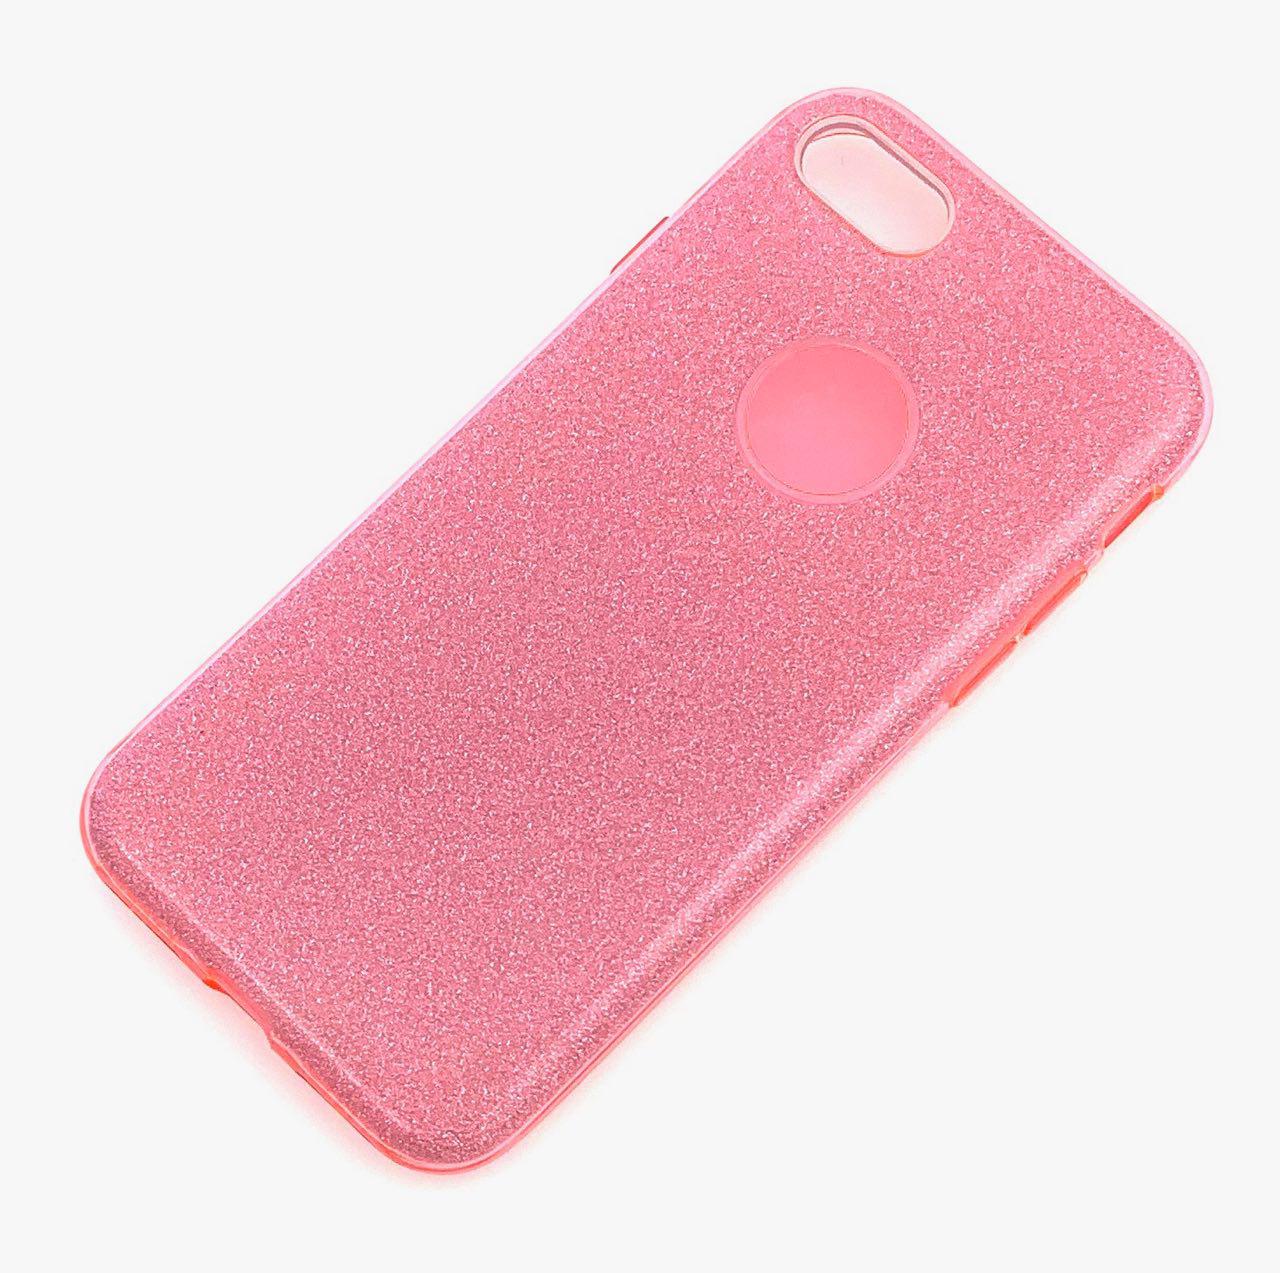 Чехол накладка Shine для APPLE iPhone 7, 8, силикон, блестки, цвет коралловый.